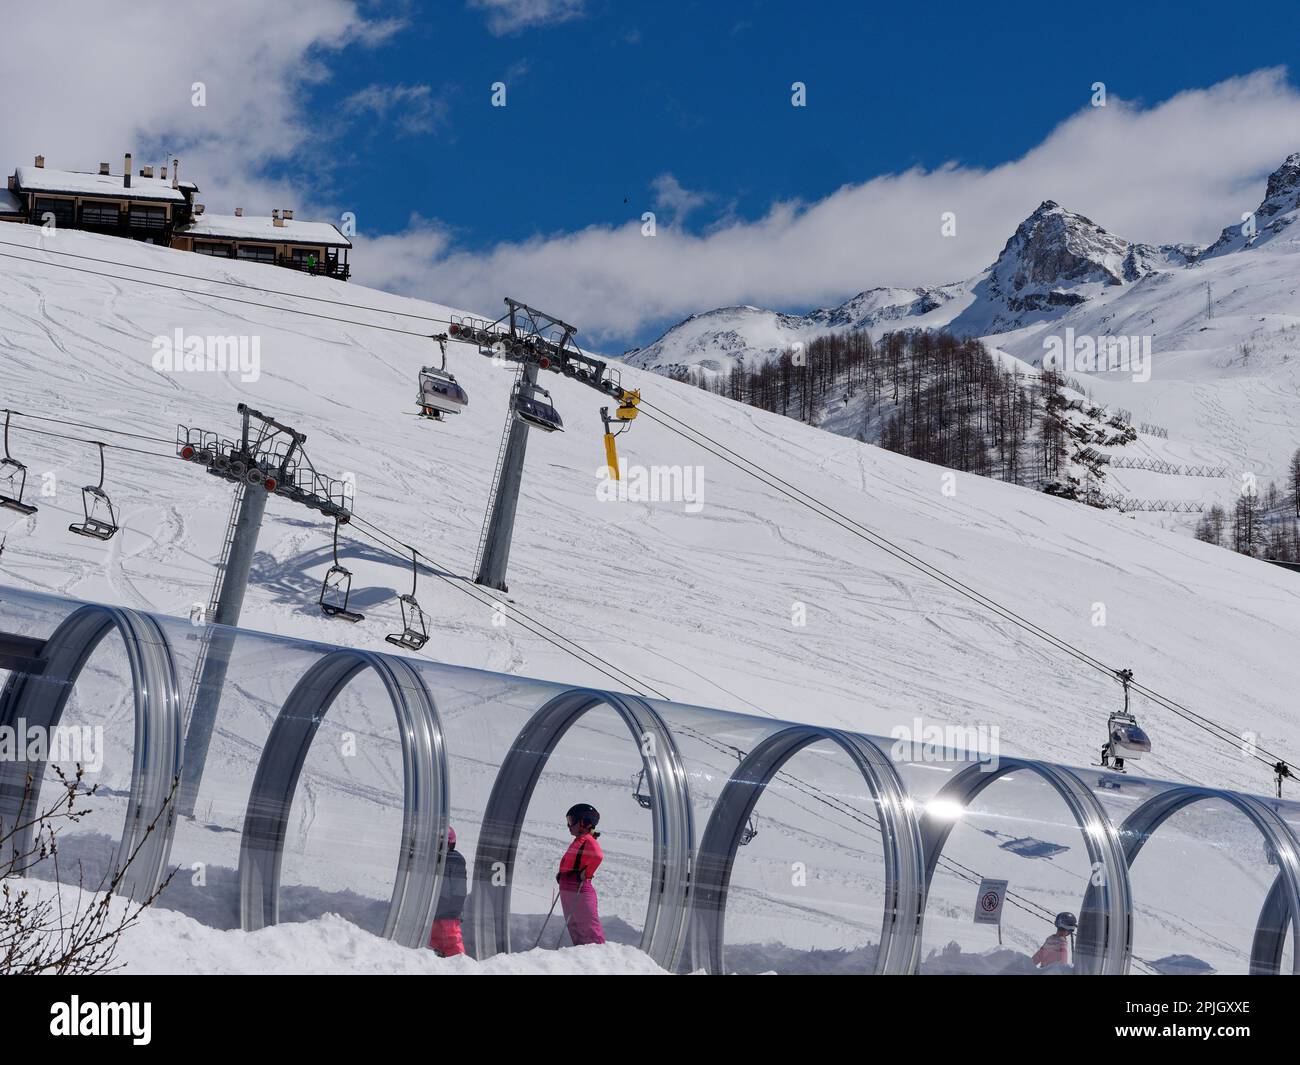 Das Skigebiet Breuil-Cervinia im Aostatal Italien. Kinder-/Kinderskipiste Skilift in einem Tunnel mit Haupt-Skilift dahinter. Stockfoto